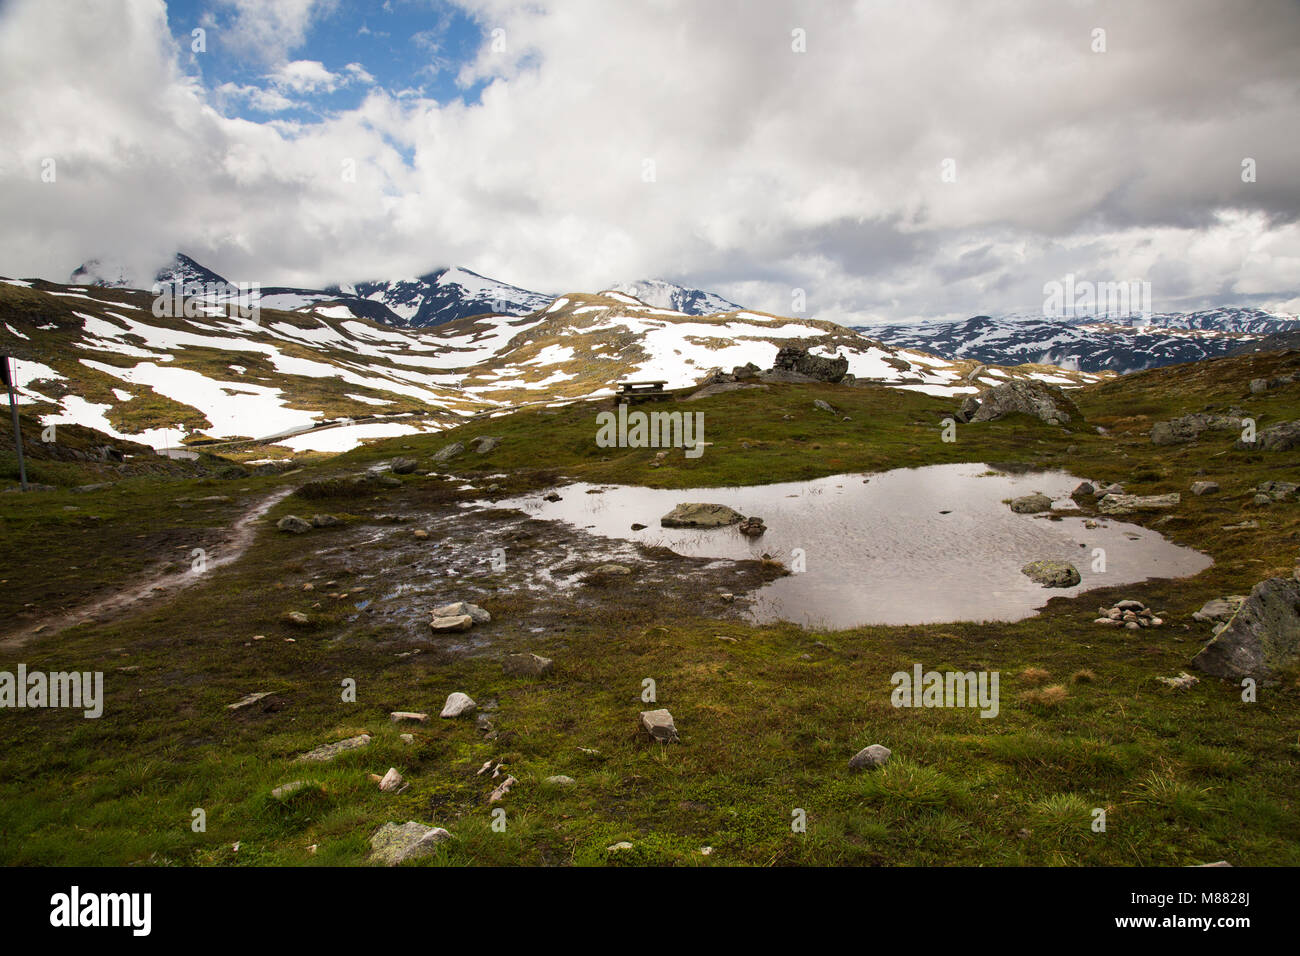 Ampia vista panoramica sulle montagne ricoperte di neve con un laghetto in primo piano Foto Stock